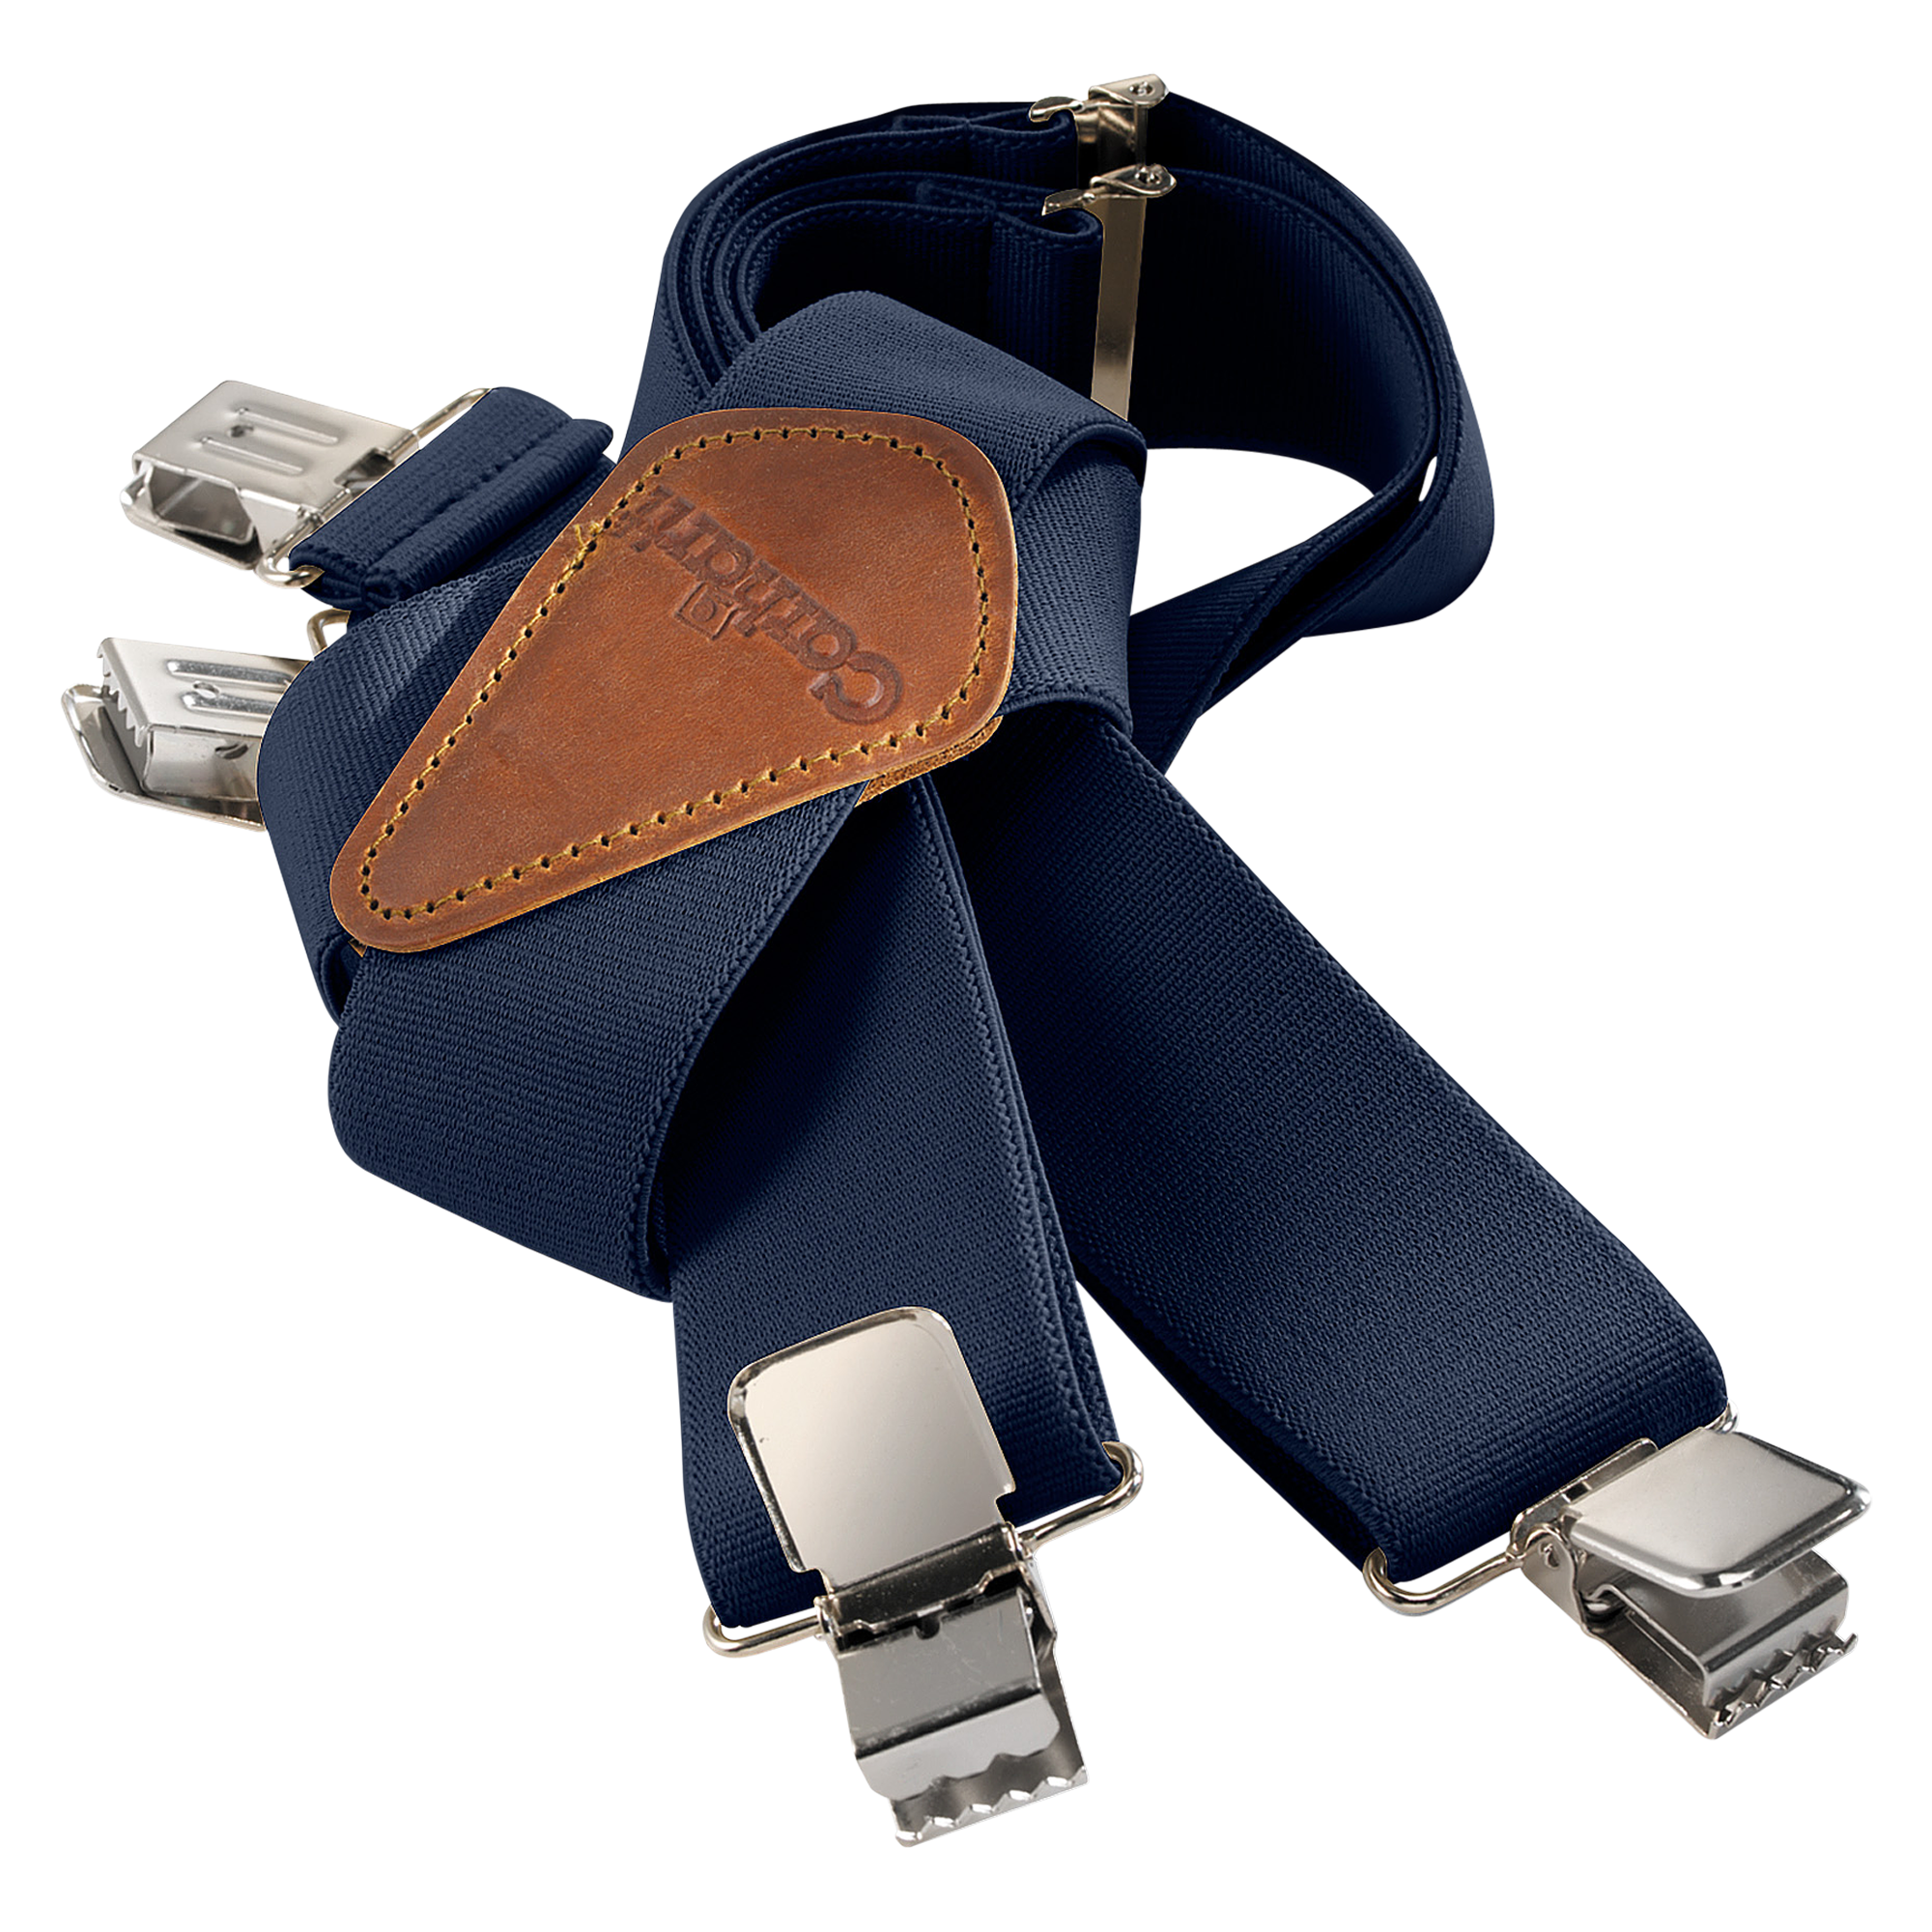  Carhartt Men's Utility Suspender, Elastic Button Clasp